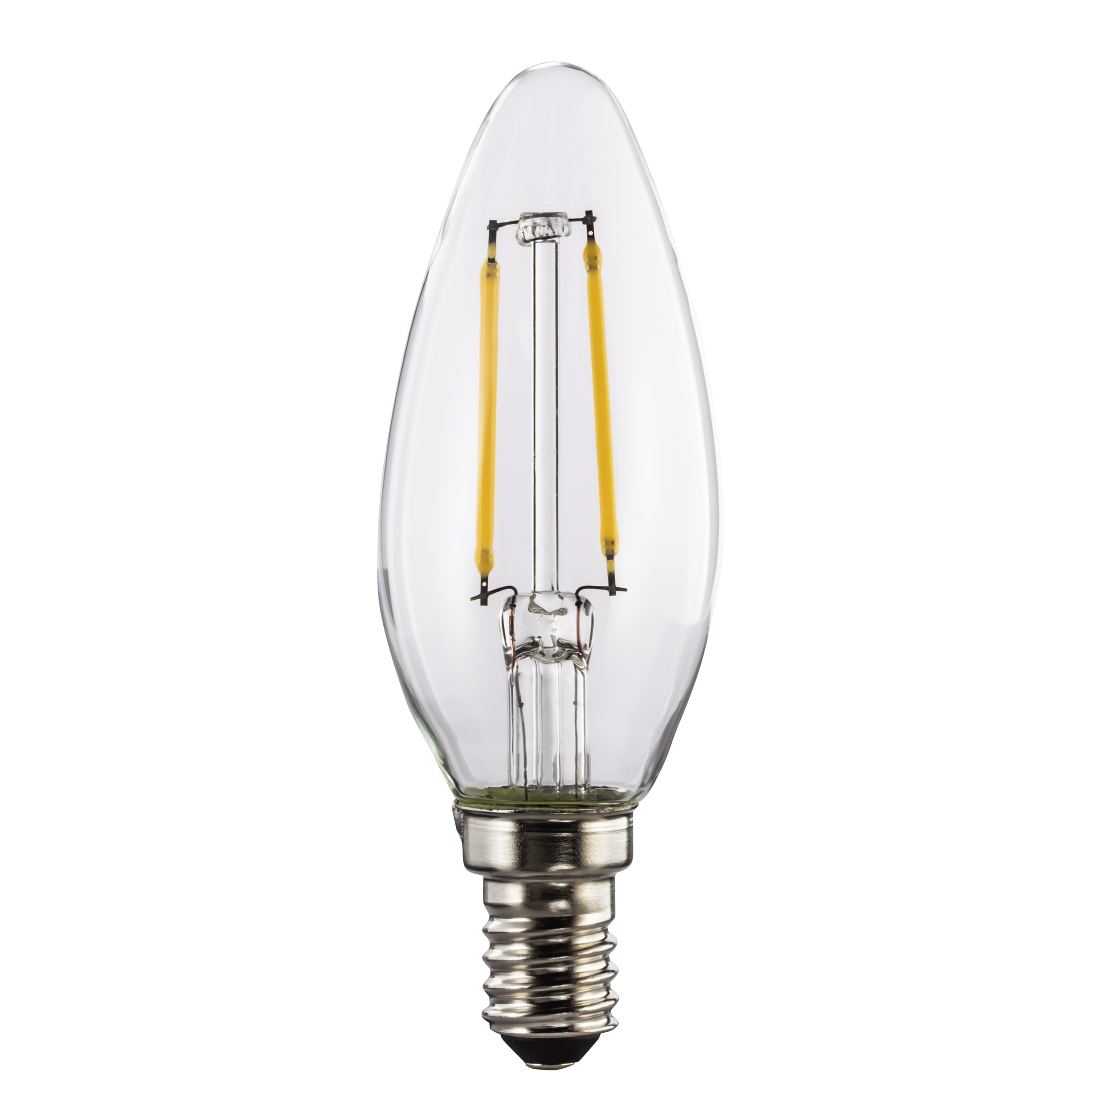 abx High-Res Image - Xavax, Ampoule filament LED, E14, 250lm rempl. ampoule bougie 25W, blc chaud